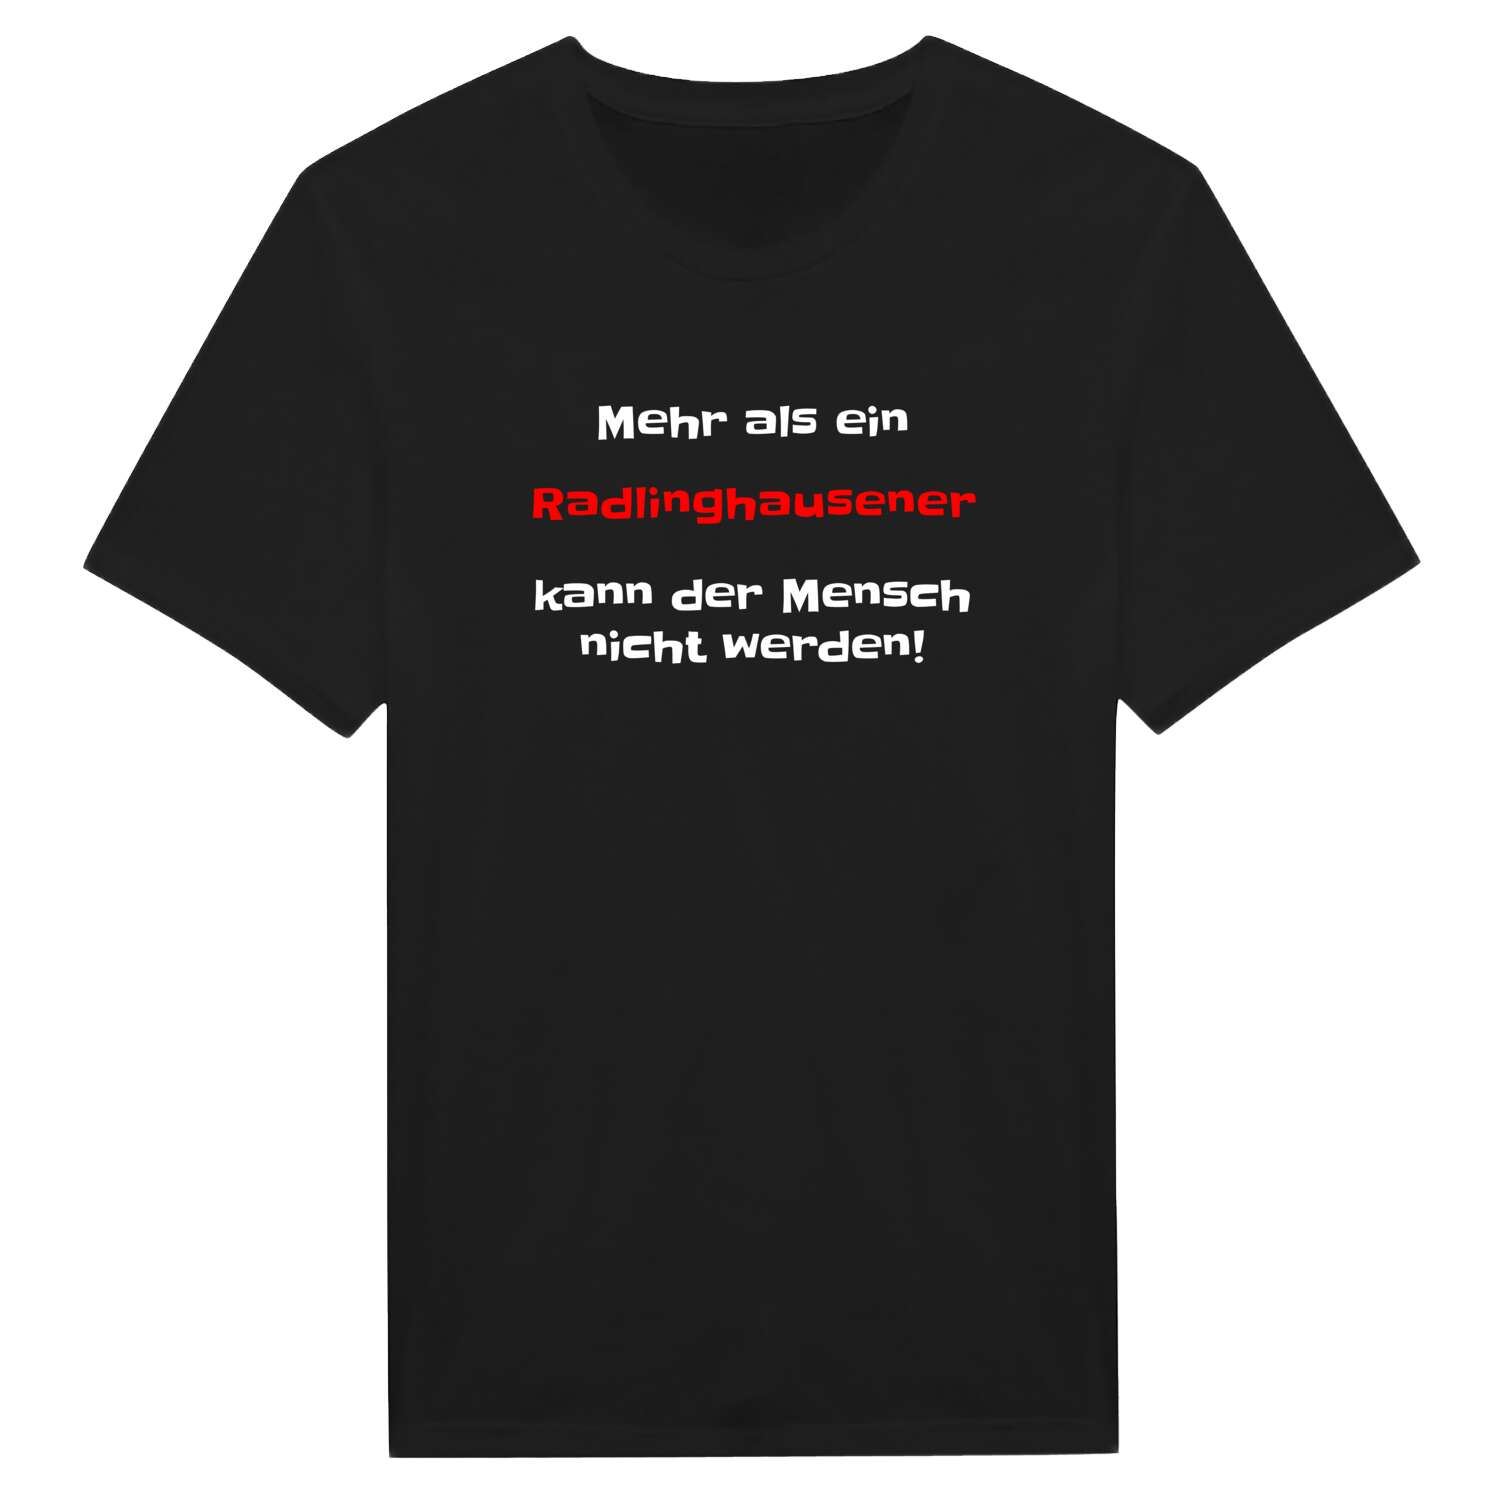 Radlinghausen T-Shirt »Mehr als ein«